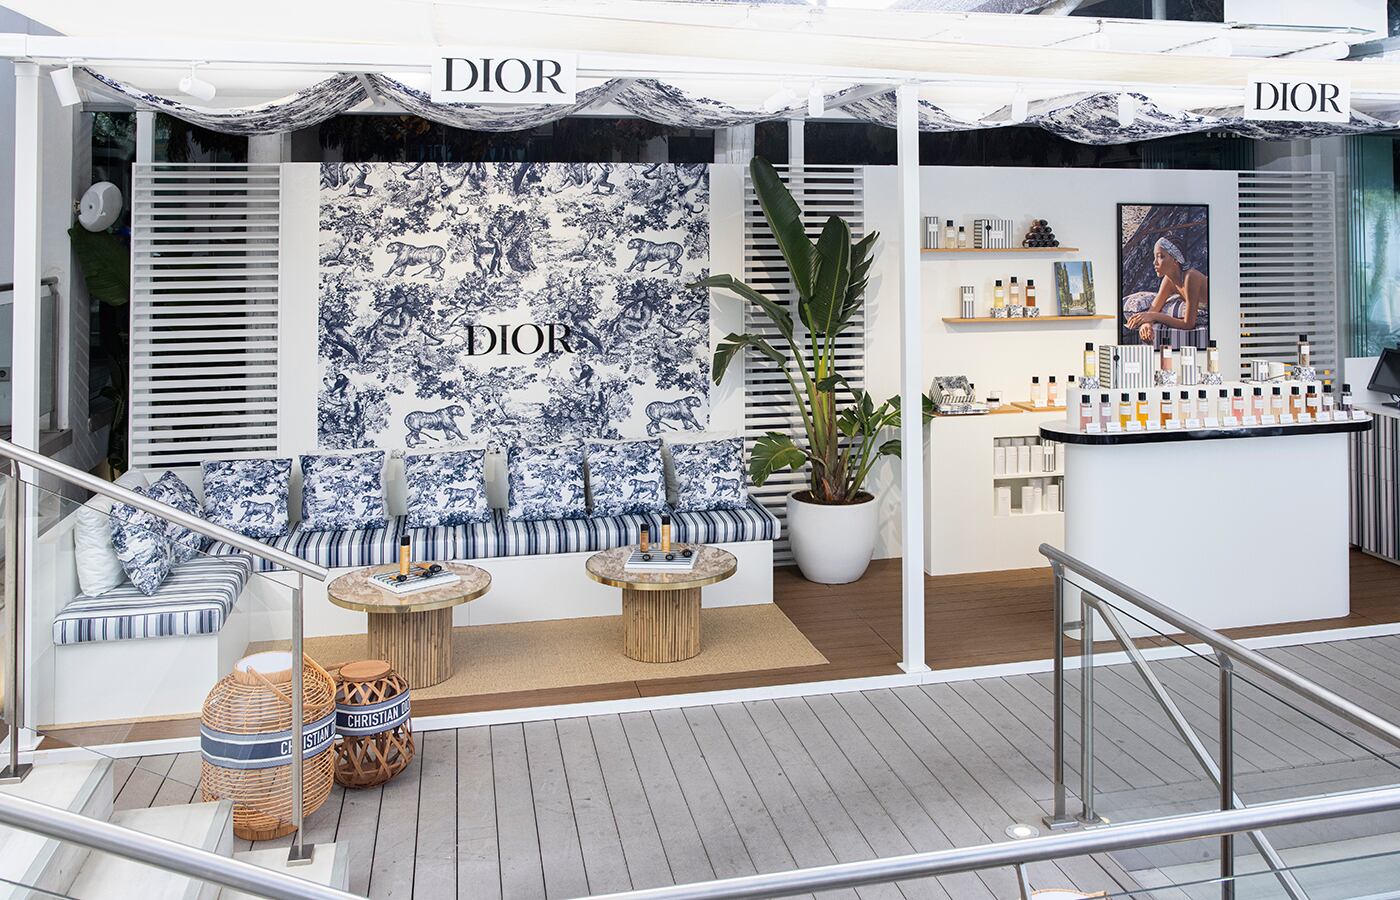 La tienda efímera de las fragancias de Dior en el hotel Puente Romano.